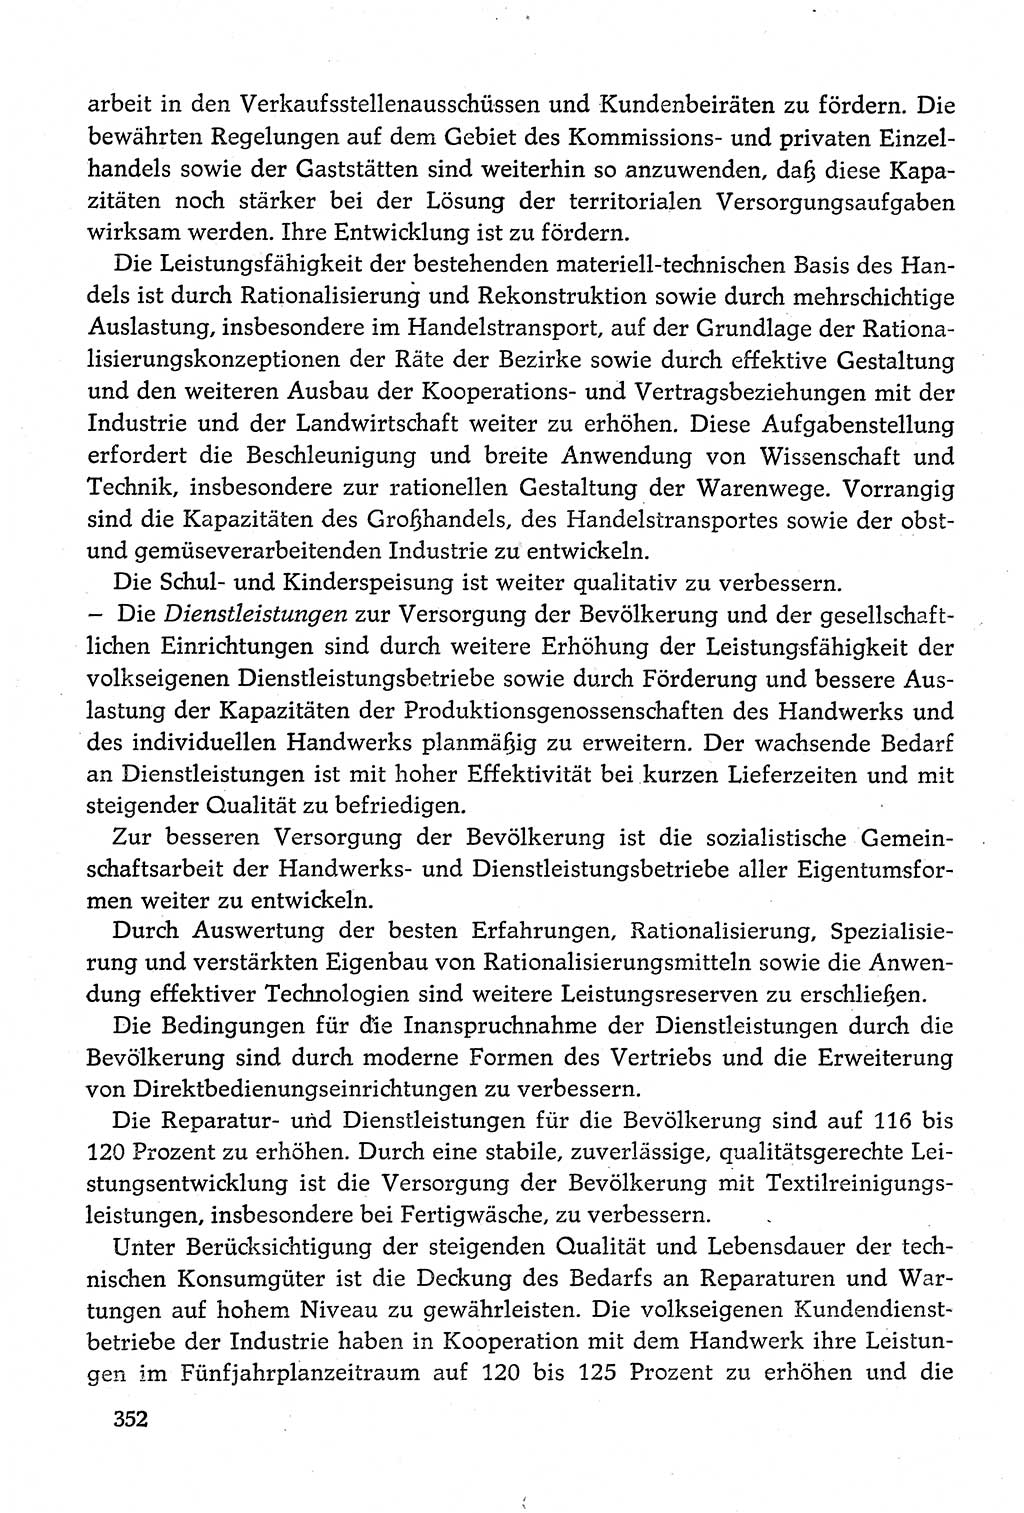 Dokumente der Sozialistischen Einheitspartei Deutschlands (SED) [Deutsche Demokratische Republik (DDR)] 1980-1981, Seite 352 (Dok. SED DDR 1980-1981, S. 352)